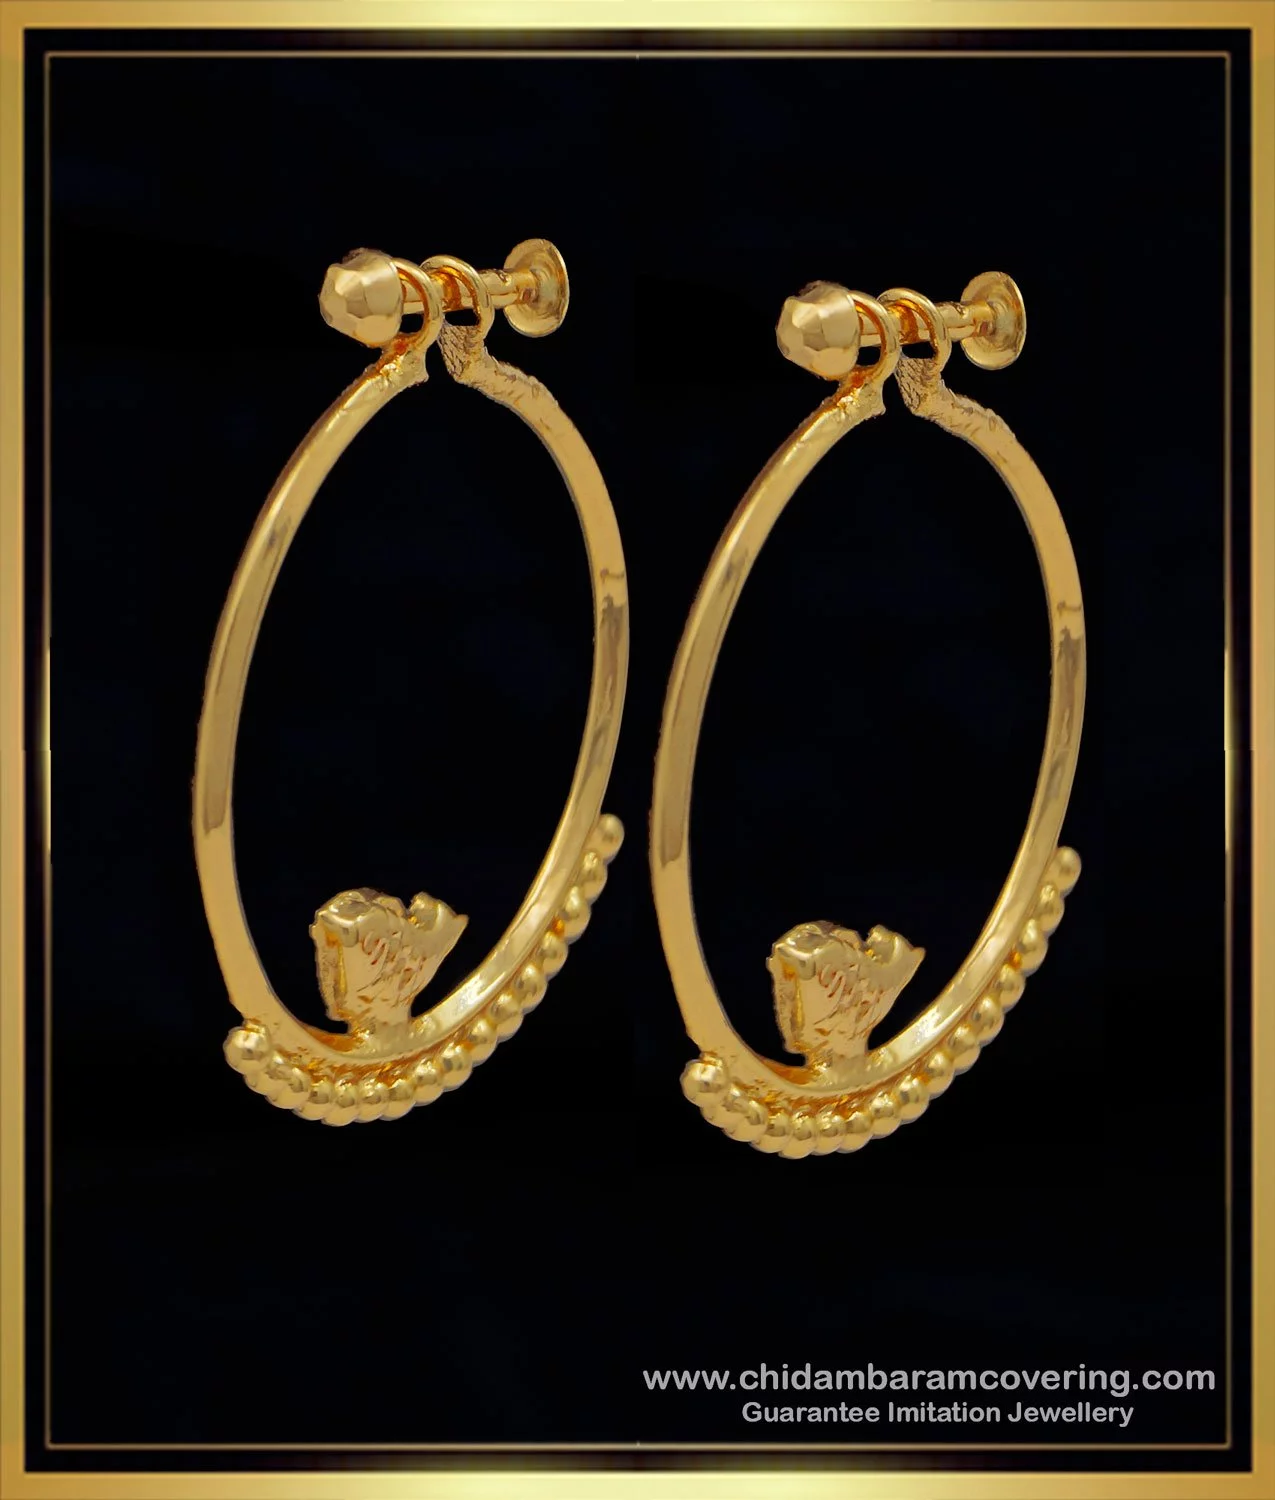 22K Gold Earrings For Women - 235-GER15736 in 2.600 Grams